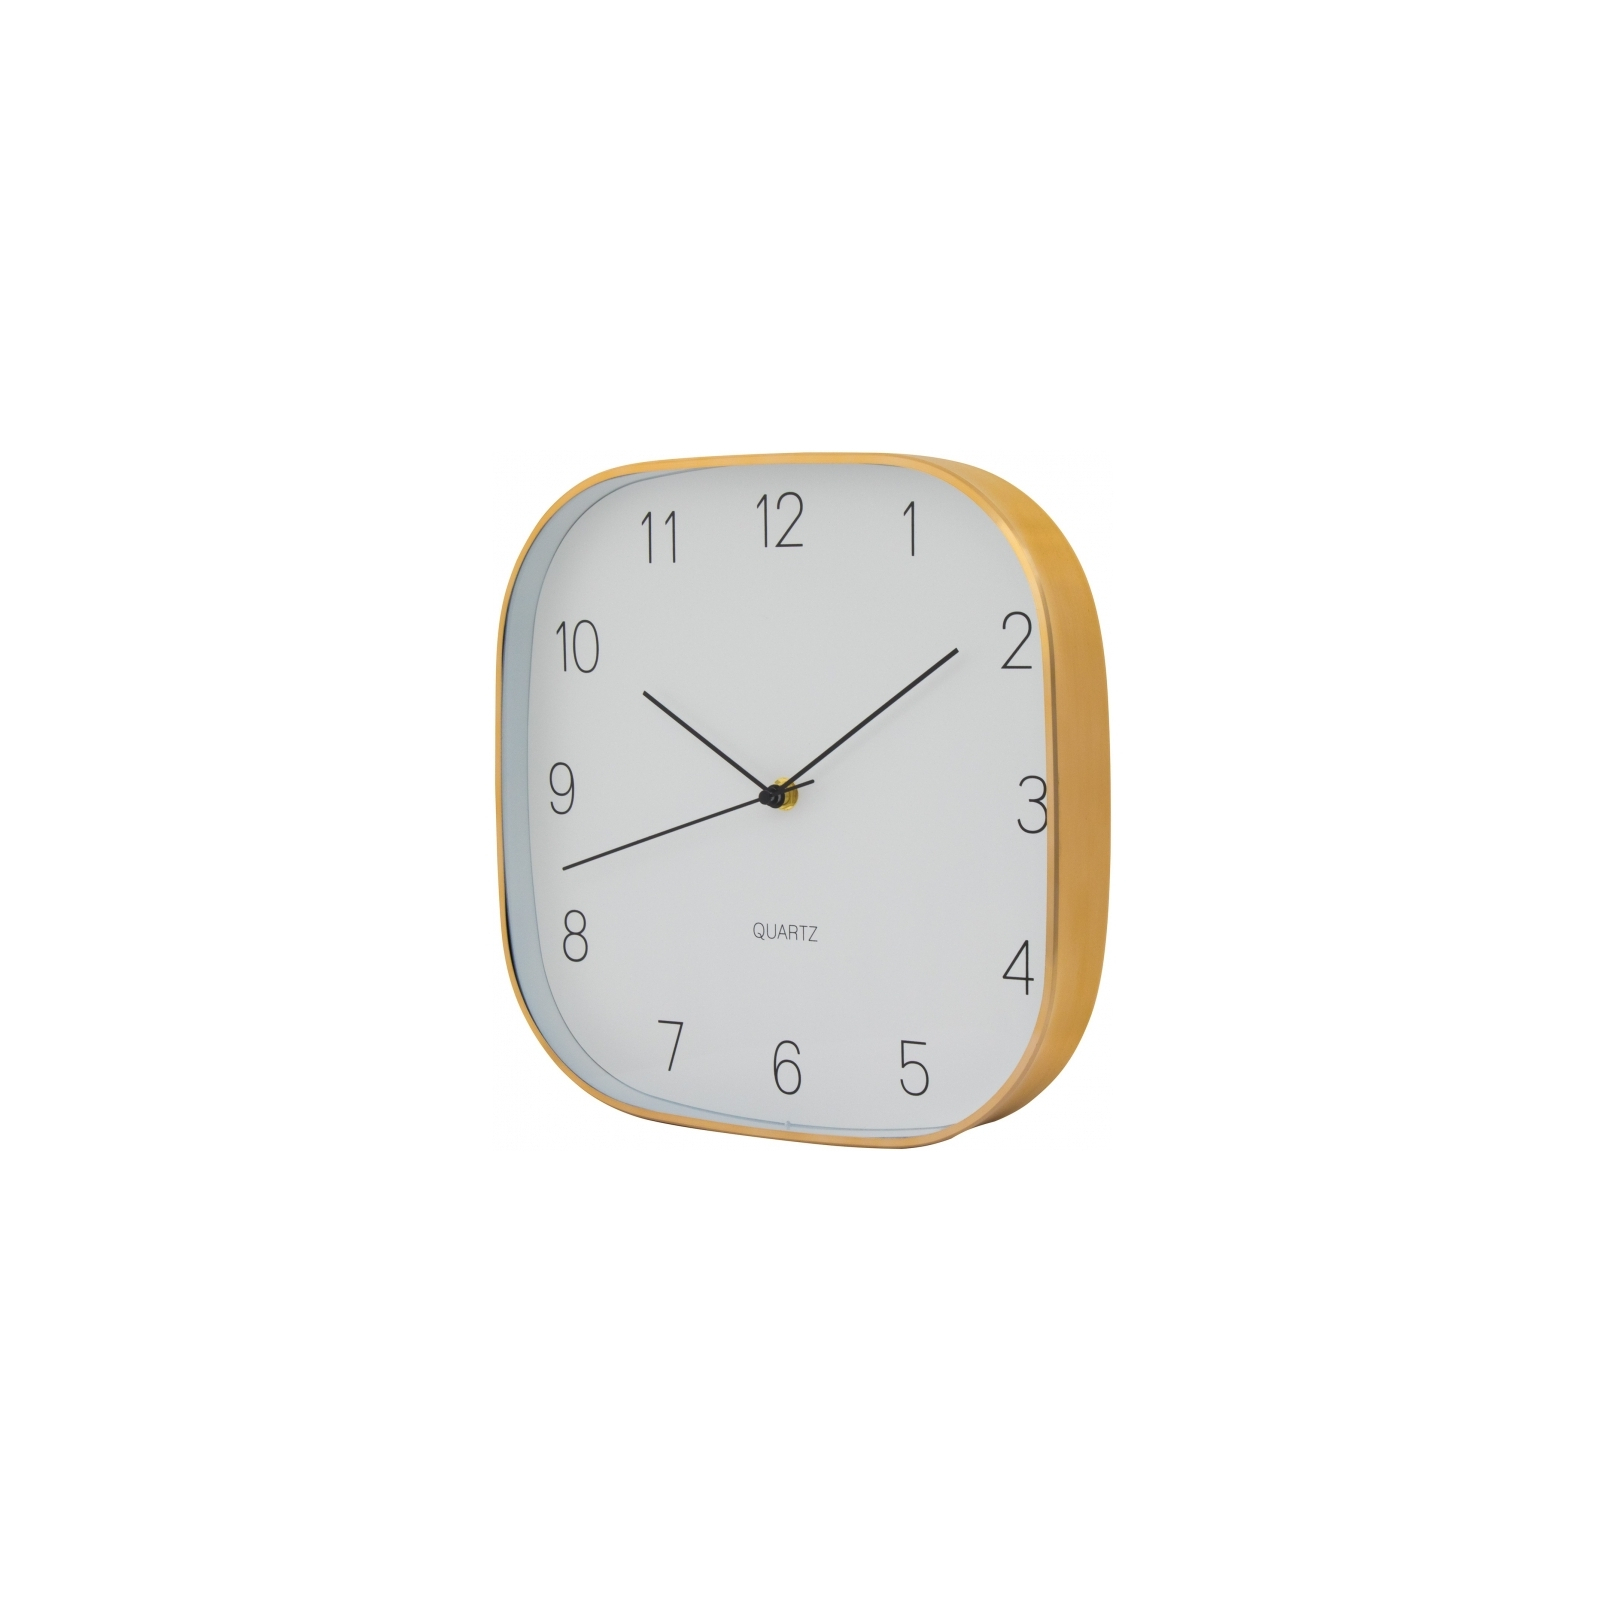 Настенные часы Optima Promo Promo Jewel, металлический, золотой (O52080-15) изображение 2